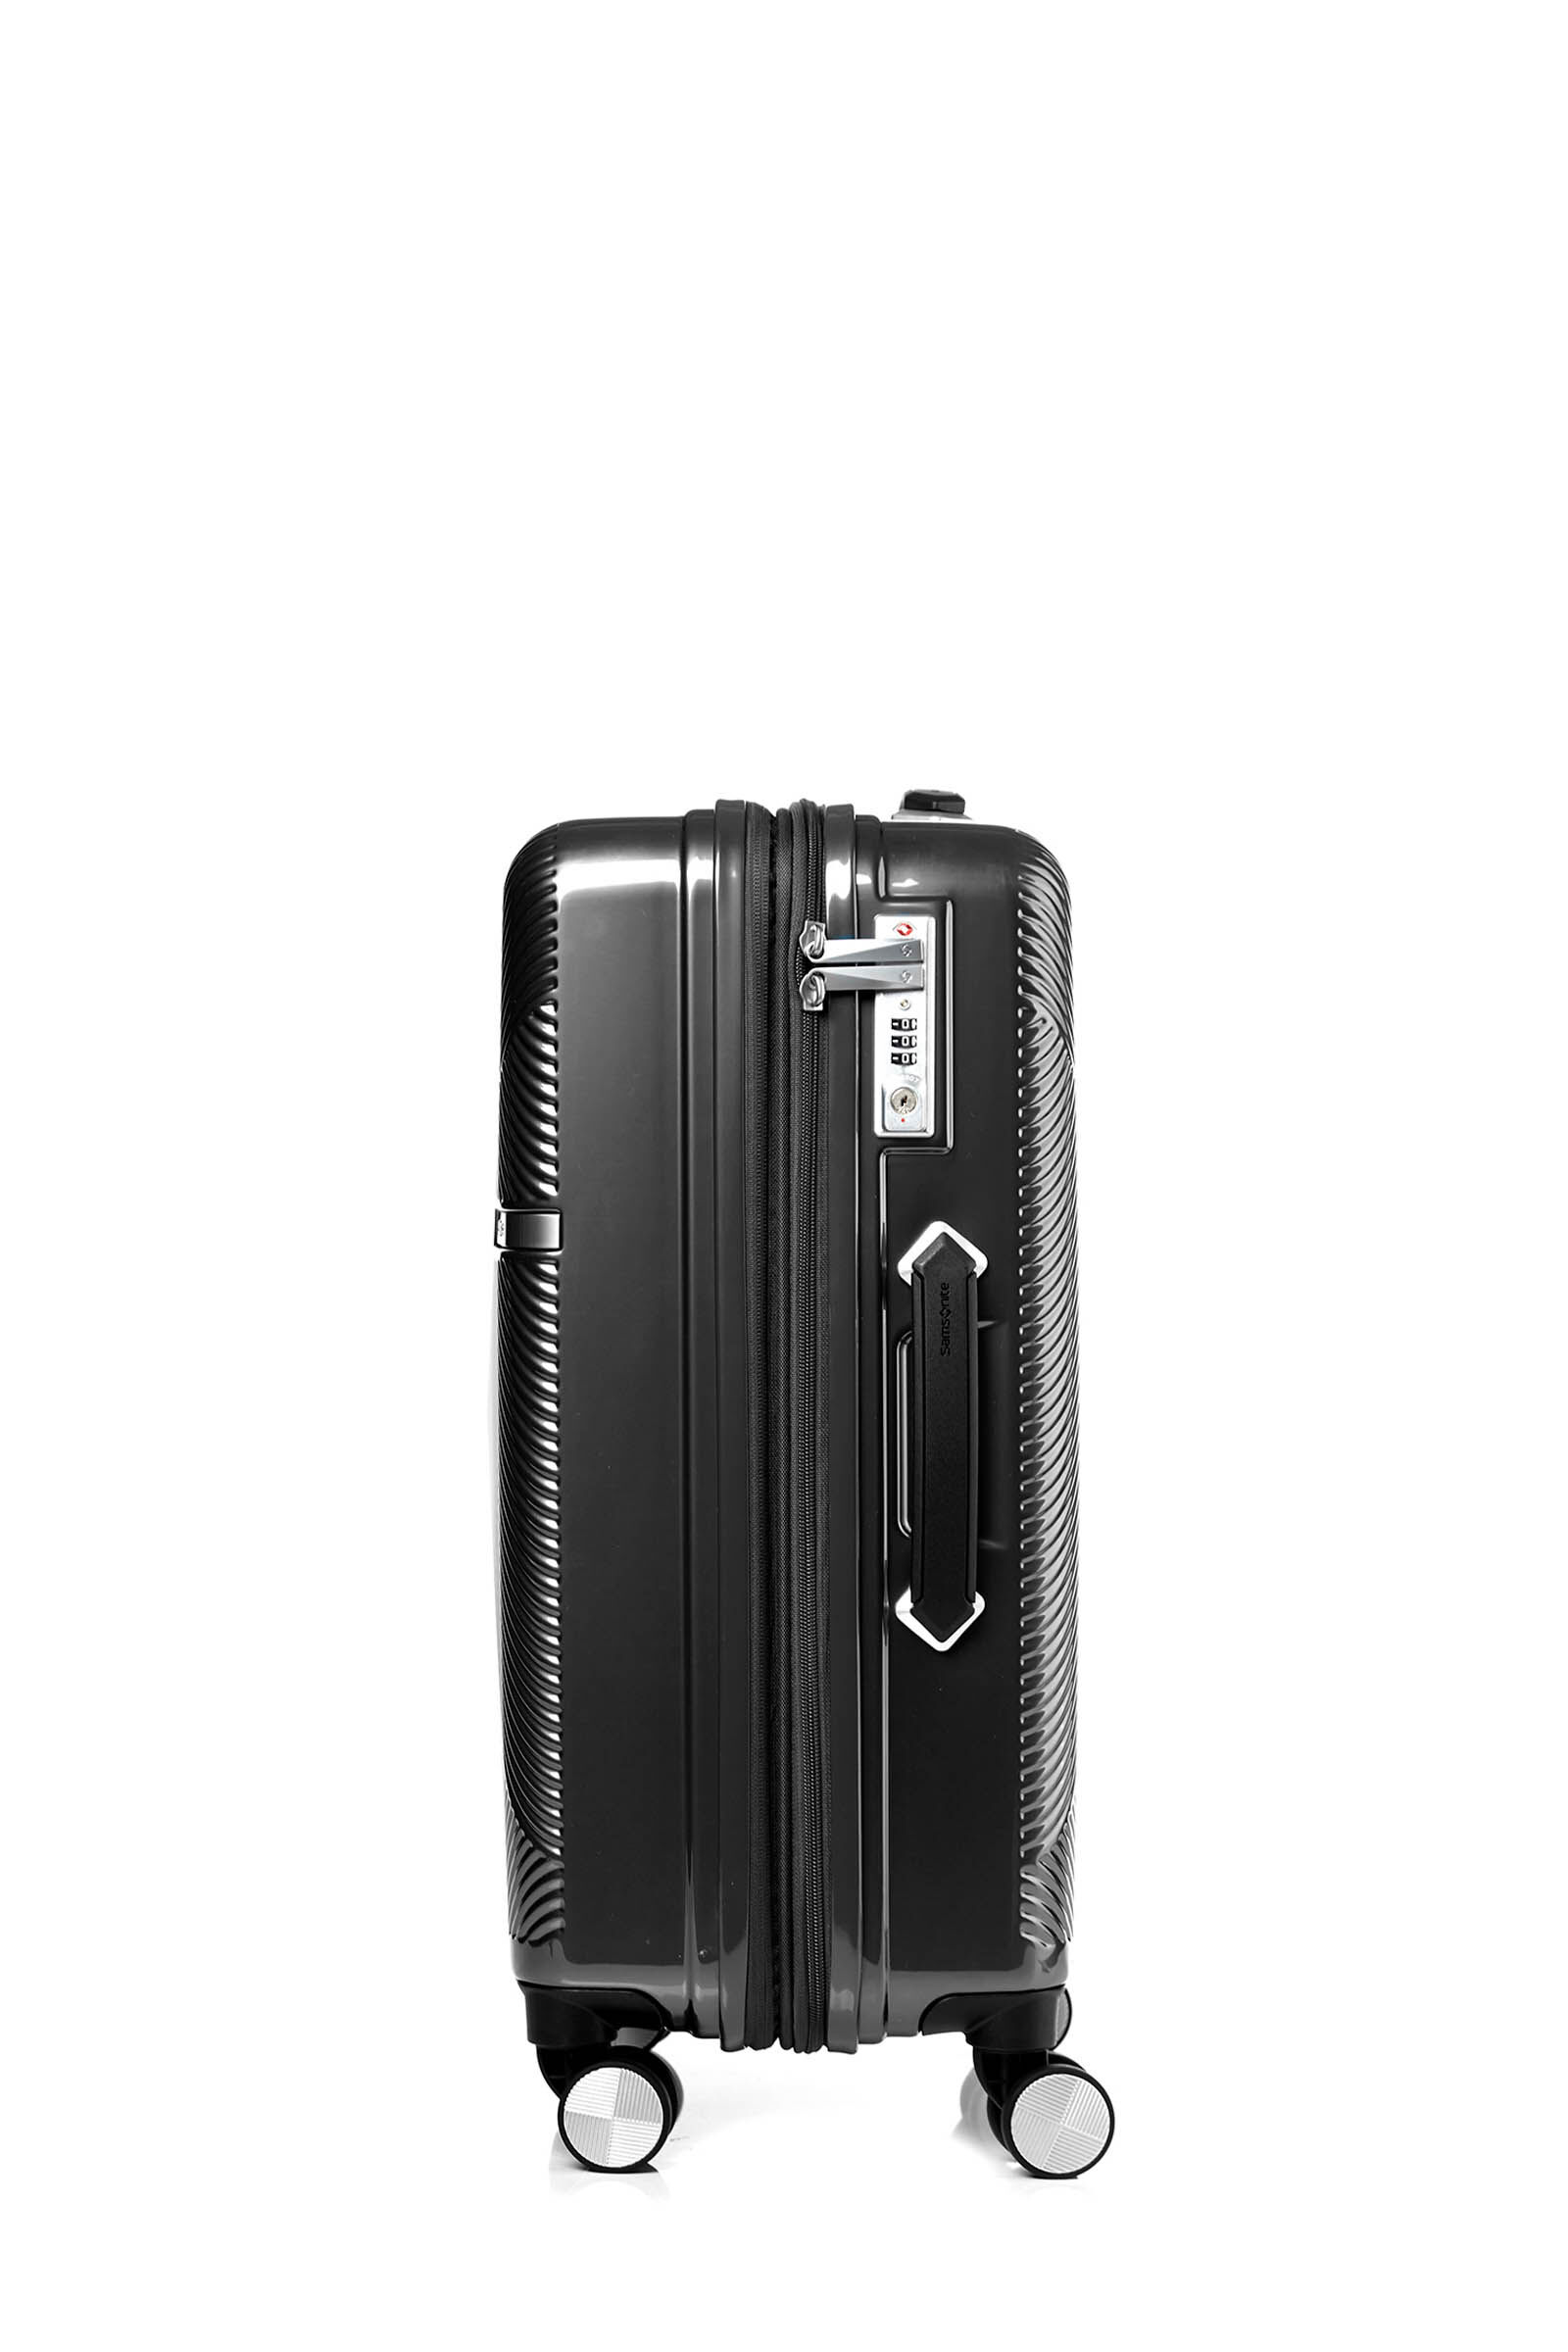 新品」サムソナイトスーツケース スピナー68/25 EXP - 旅行用バッグ